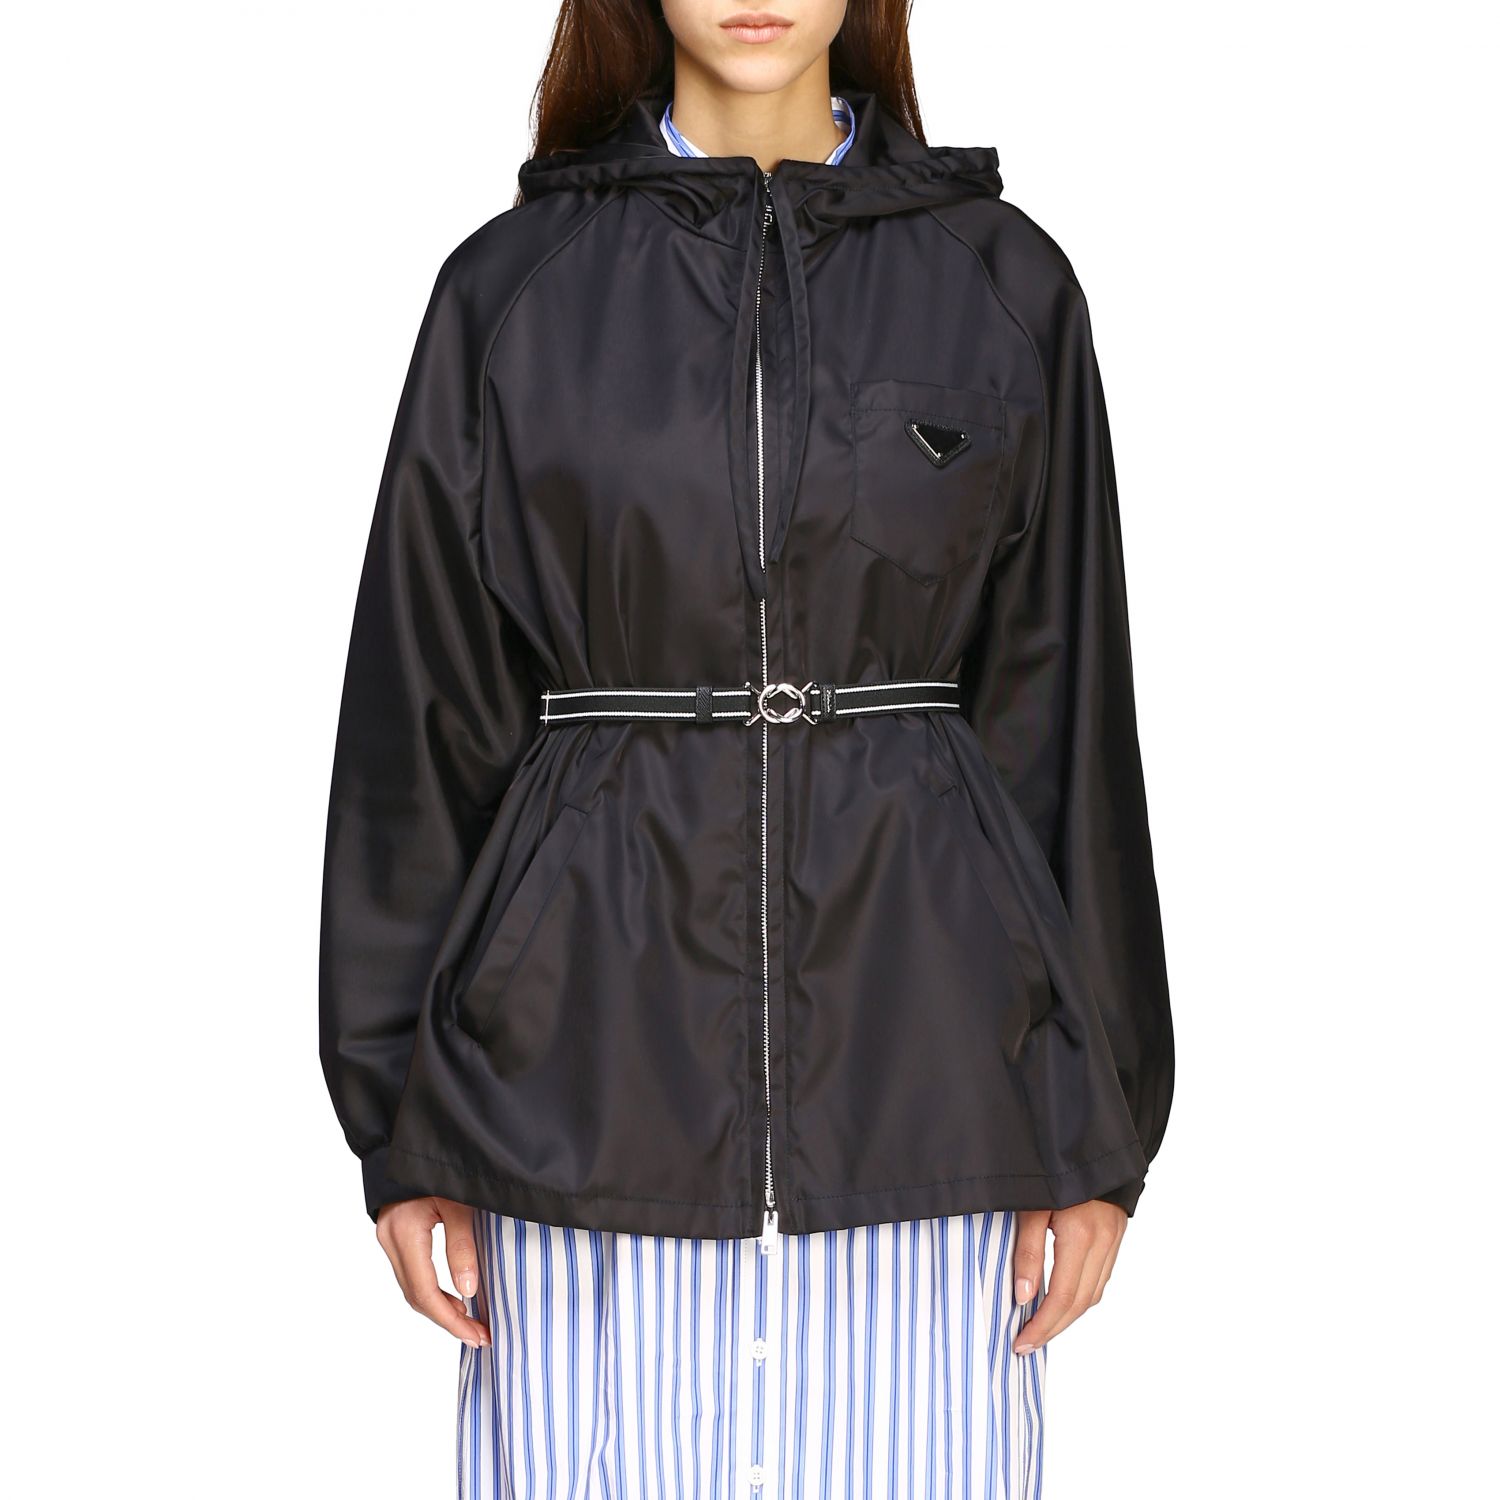 PRADA: jacket for women - Black | Prada jacket 29X758 I18 online on  